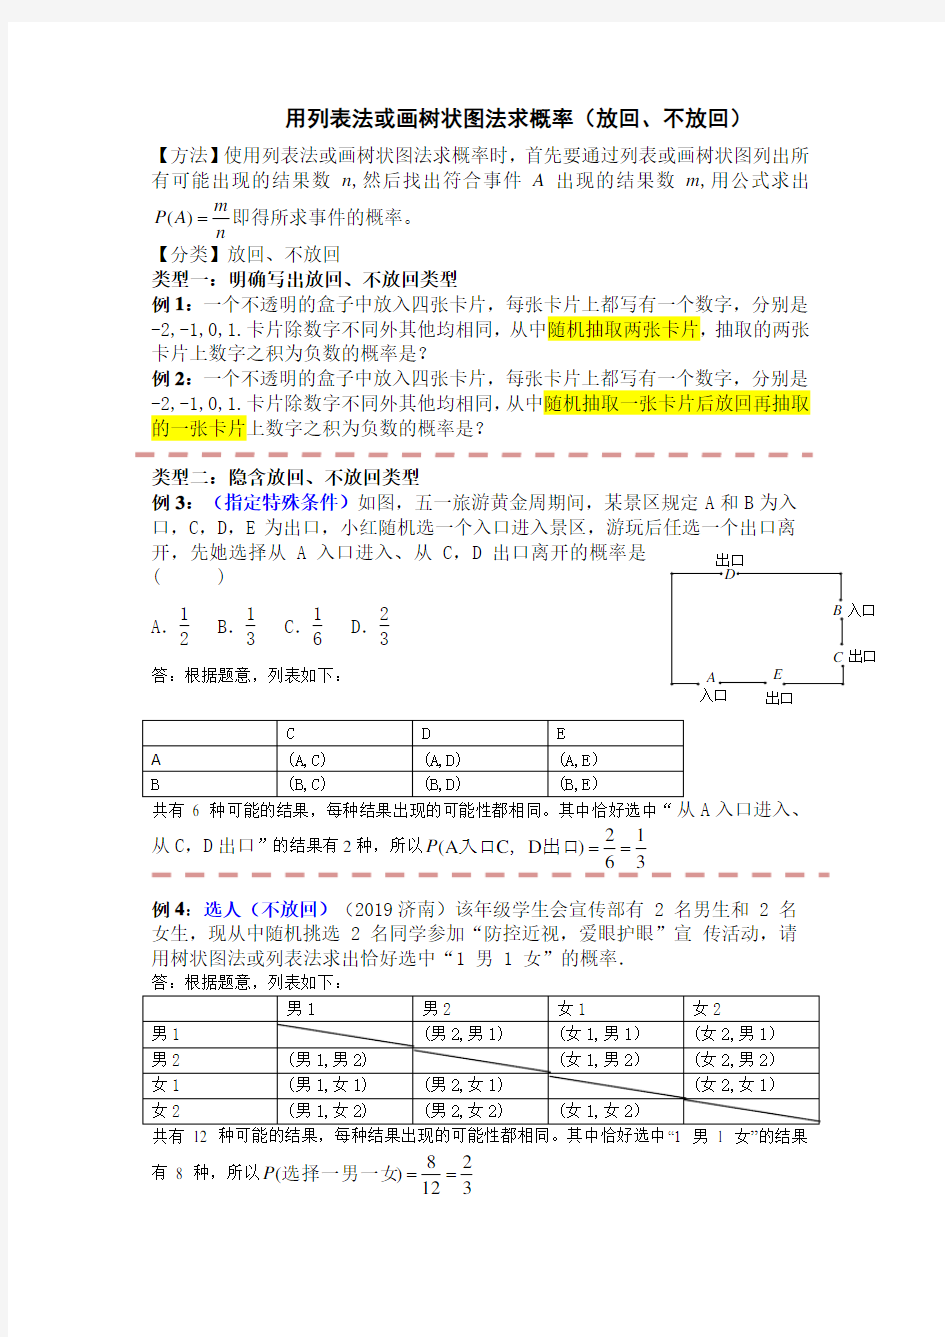 用列表法或画树状图法求概率 (3)